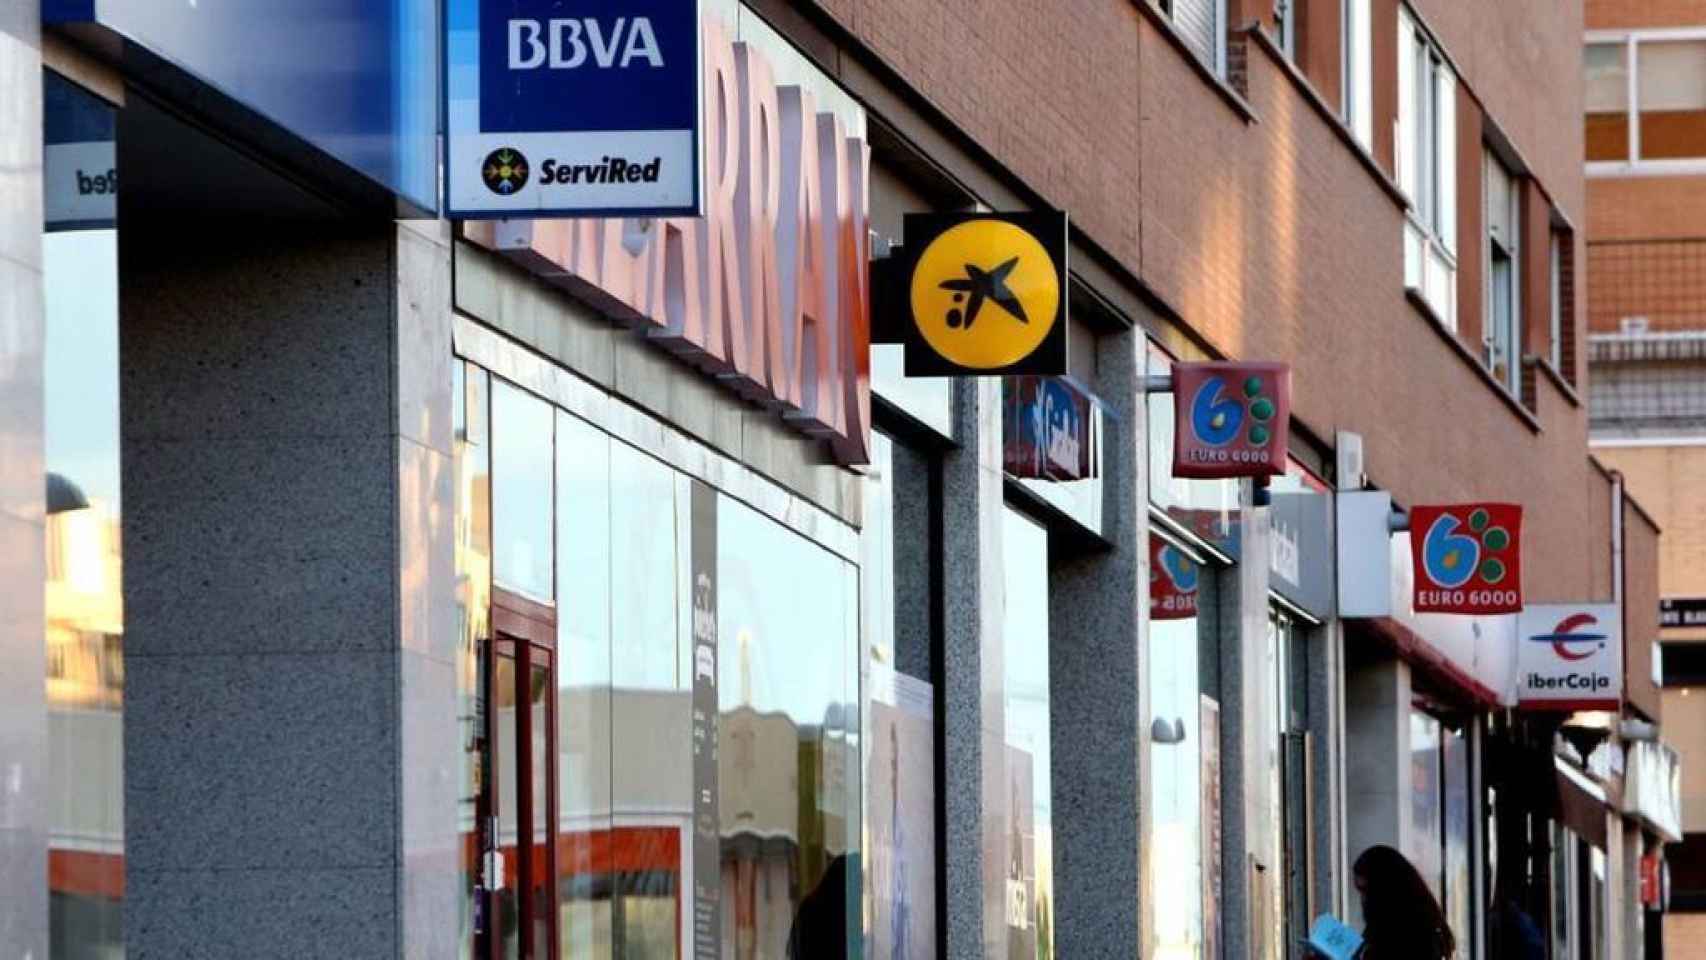 Imagen de varias oficinas bancarias en una misma calle.